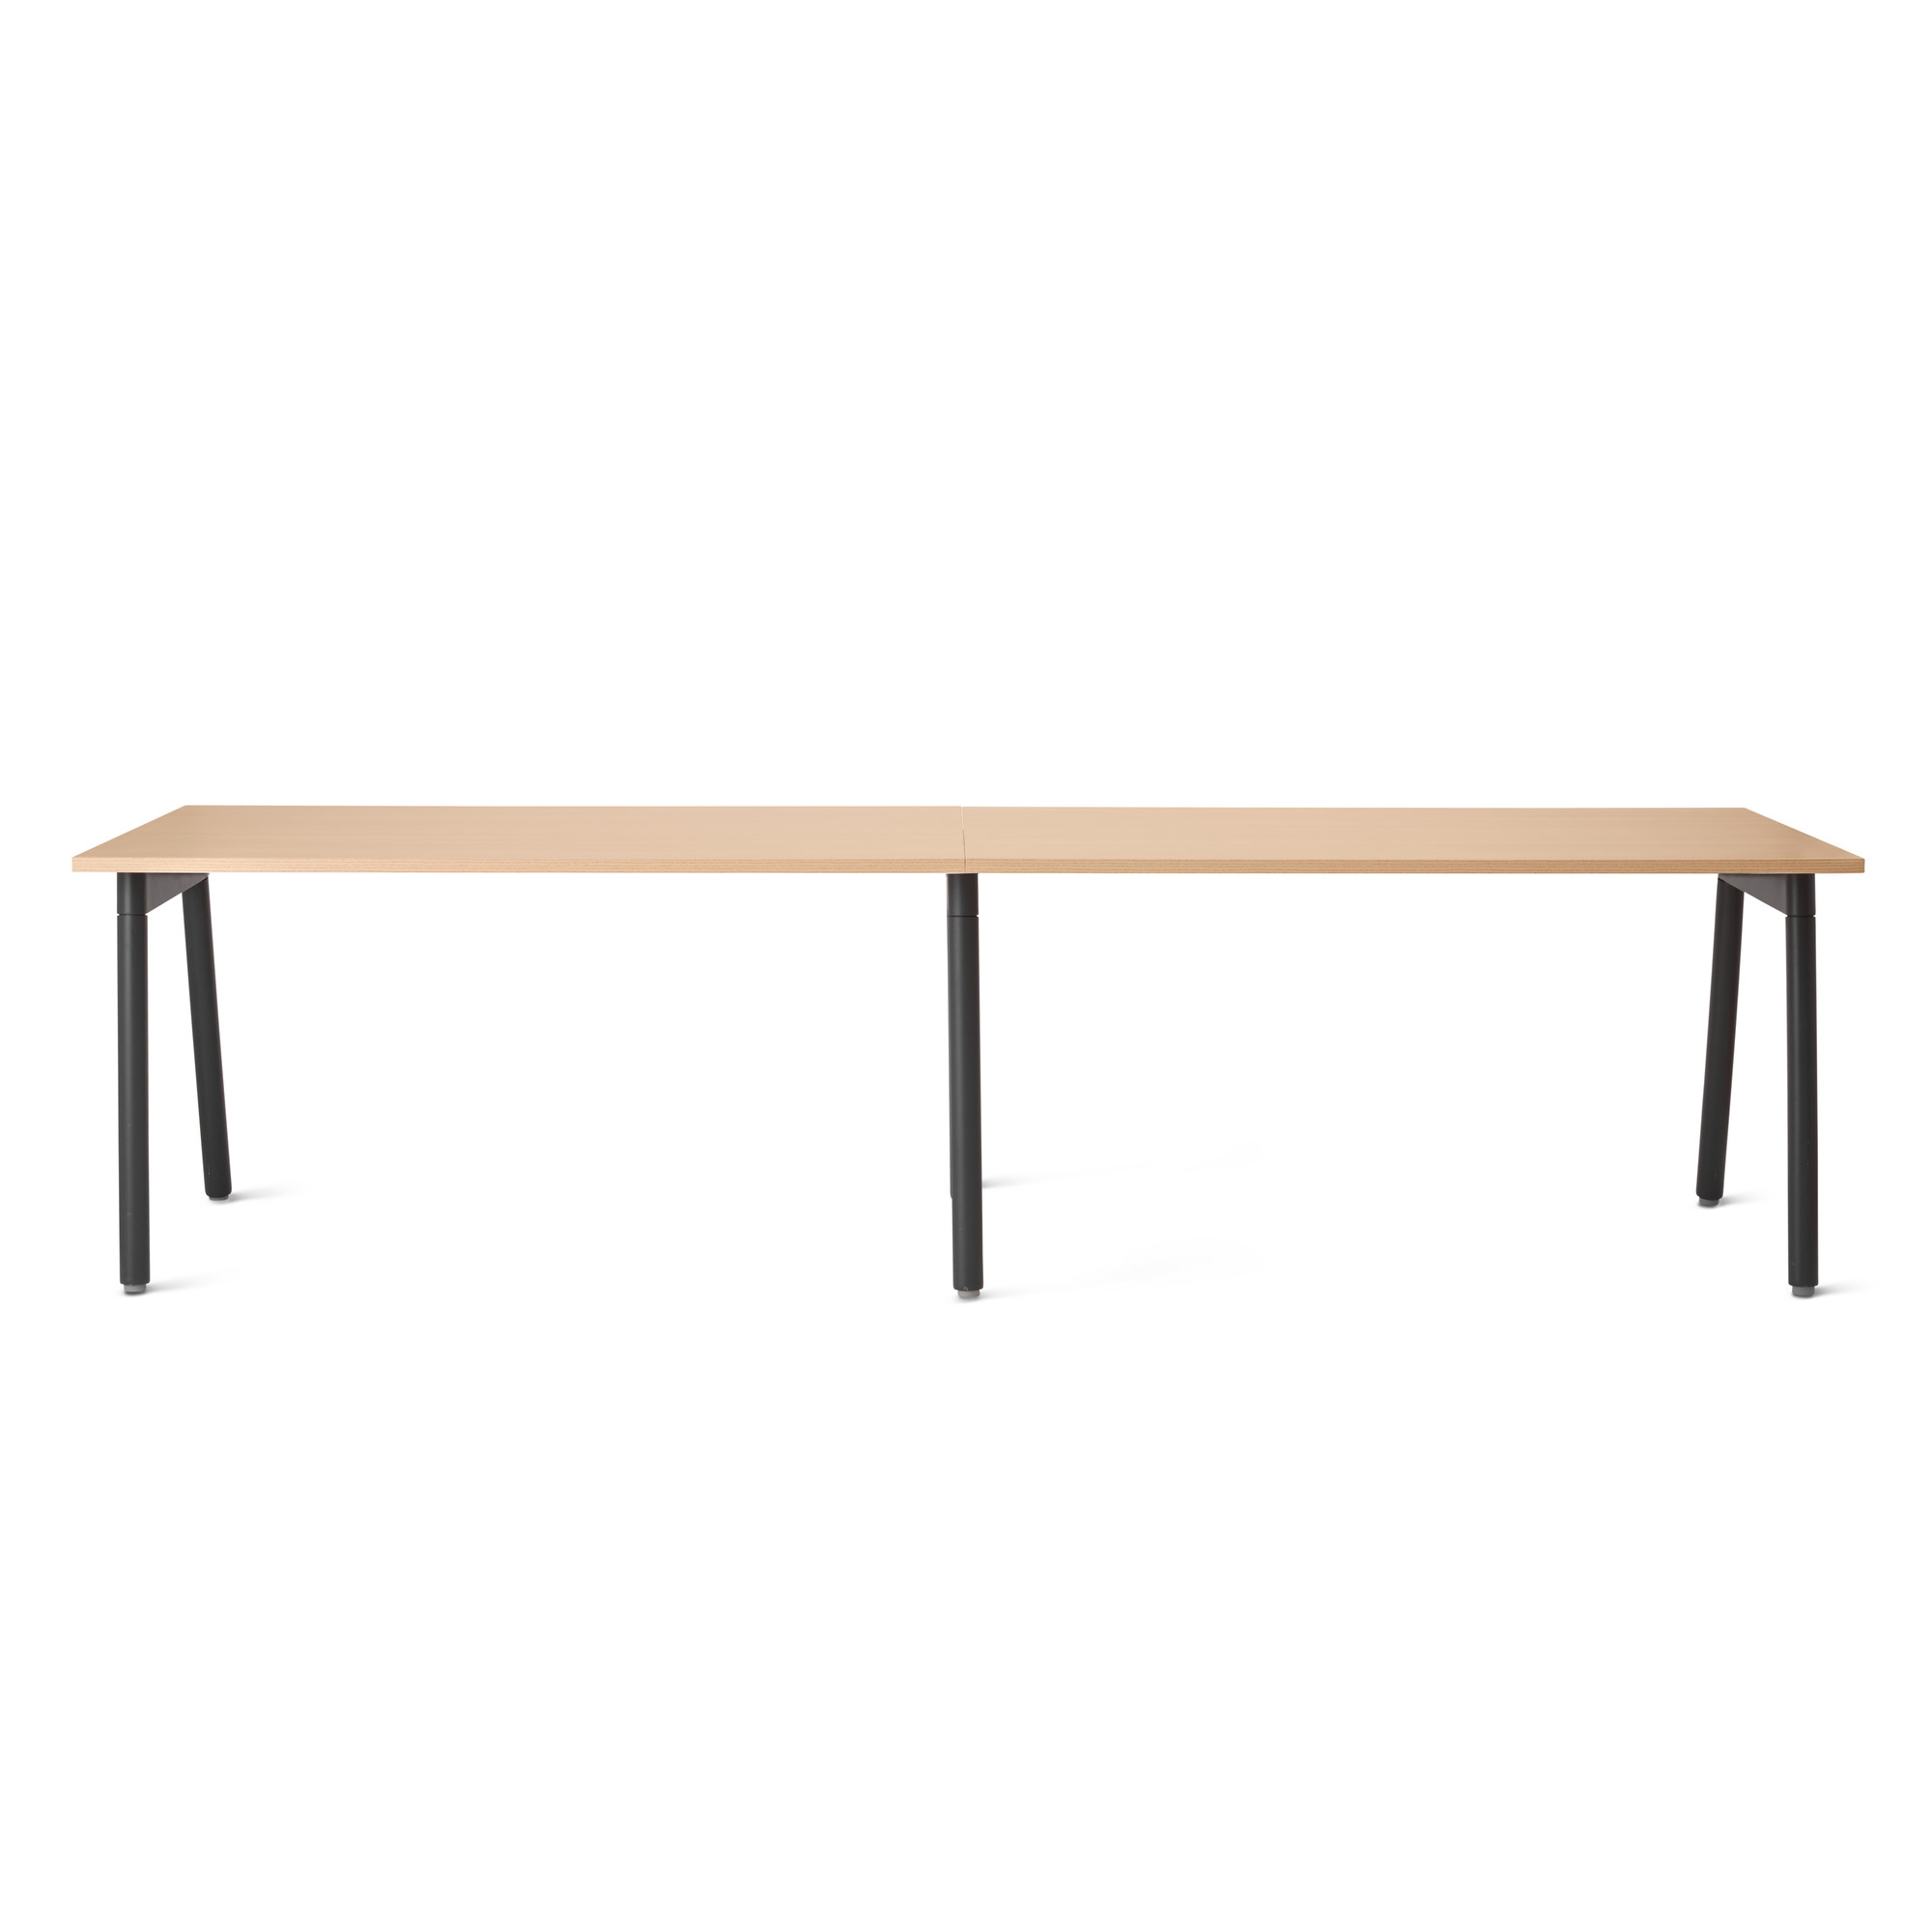 Series A Single Desk for 2, Natural Oak, 57", Charcoal Legs,Natural Oak,hi-res